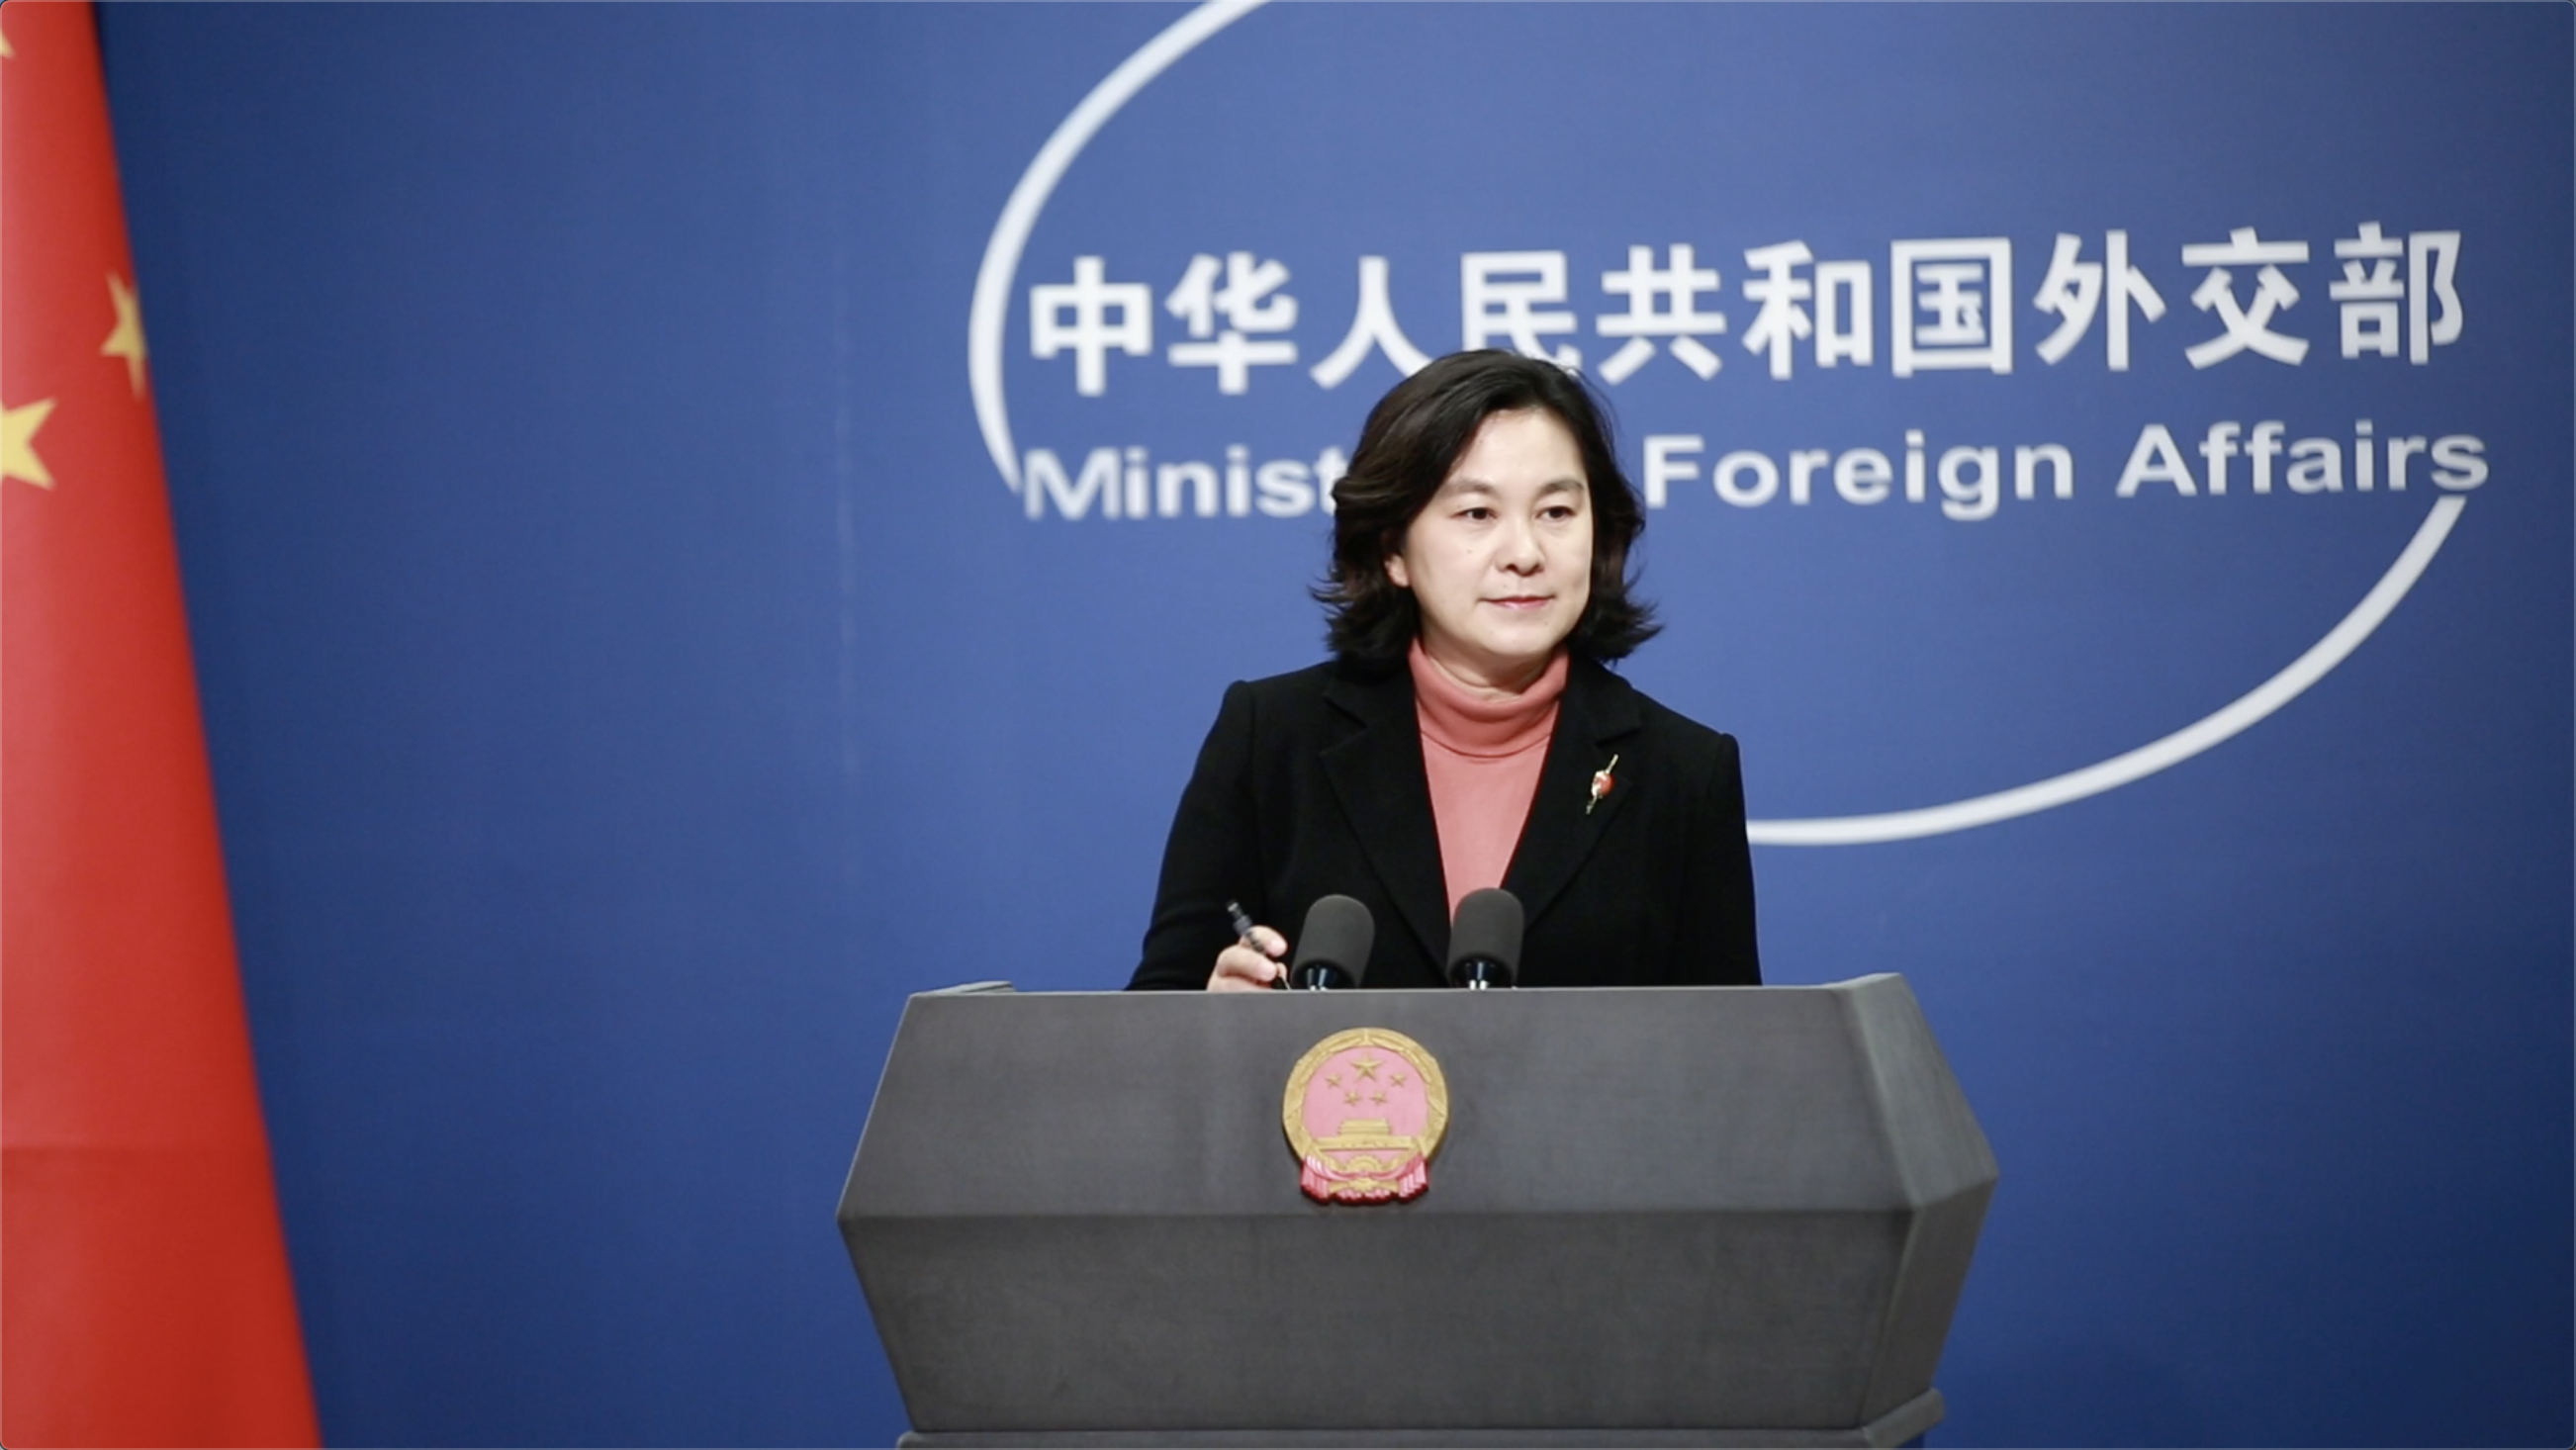 华春莹回应欧盟驻华大使称要对中国战狼外交说不